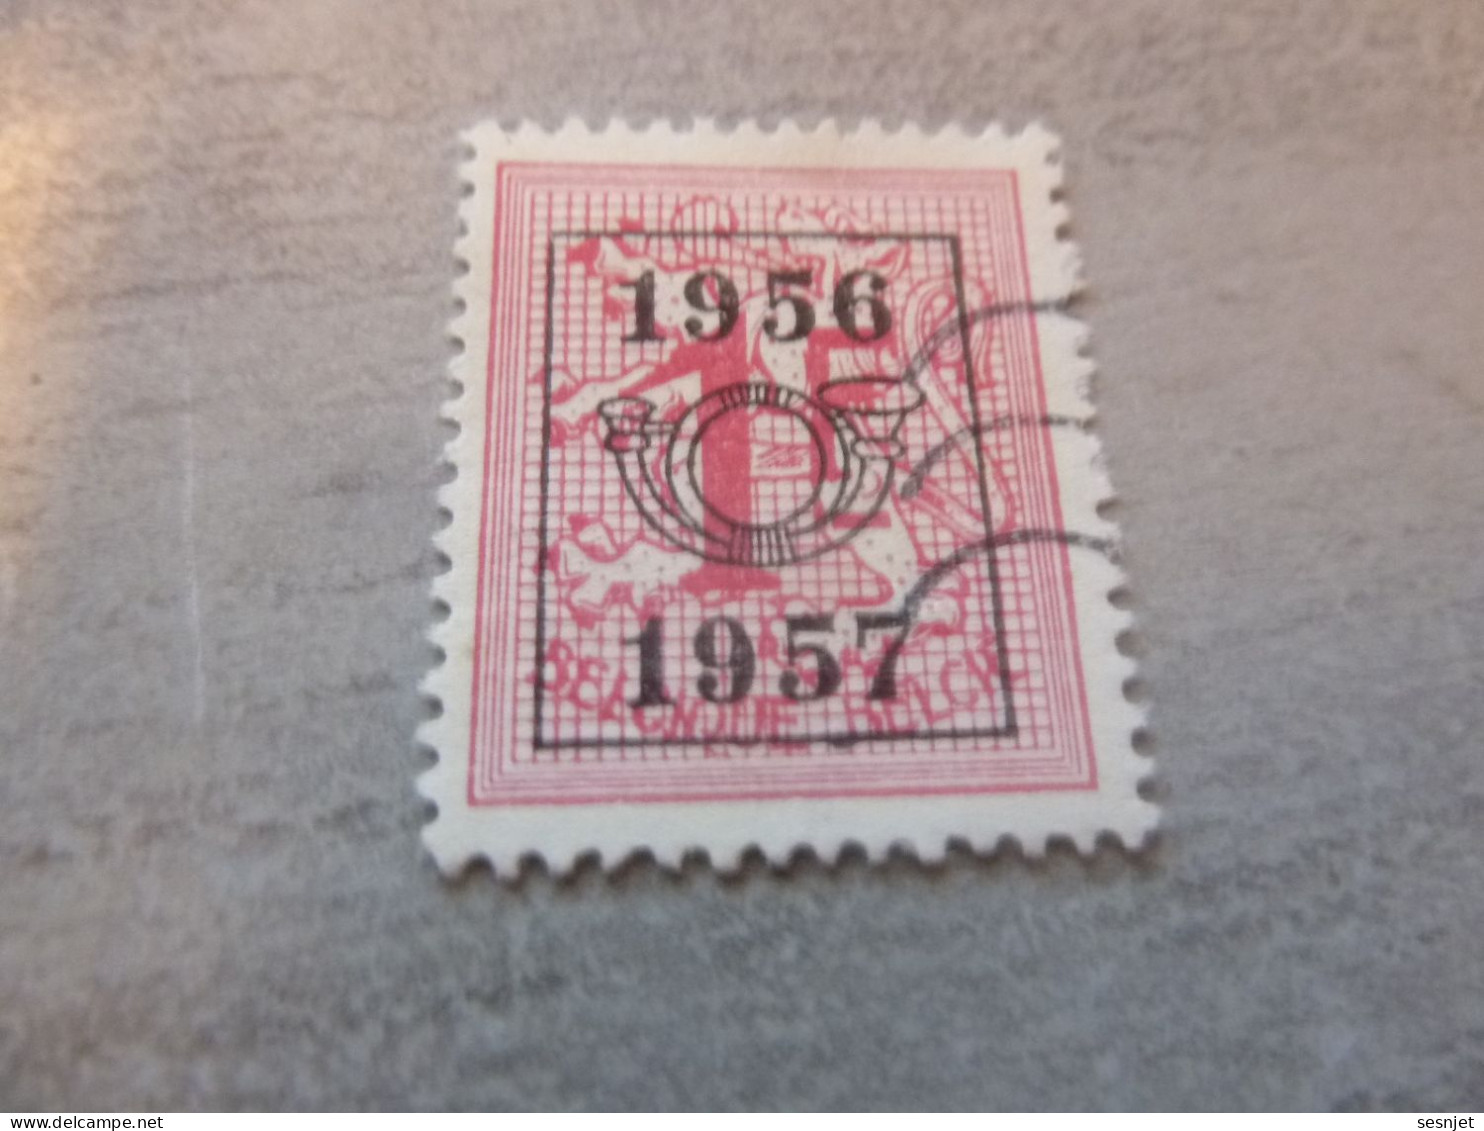 Belgique - Lion - Préoblitéré - 1f. - Rose - Neuf - Année 1956 - 57 - - Typos 1951-80 (Chiffre Sur Lion)